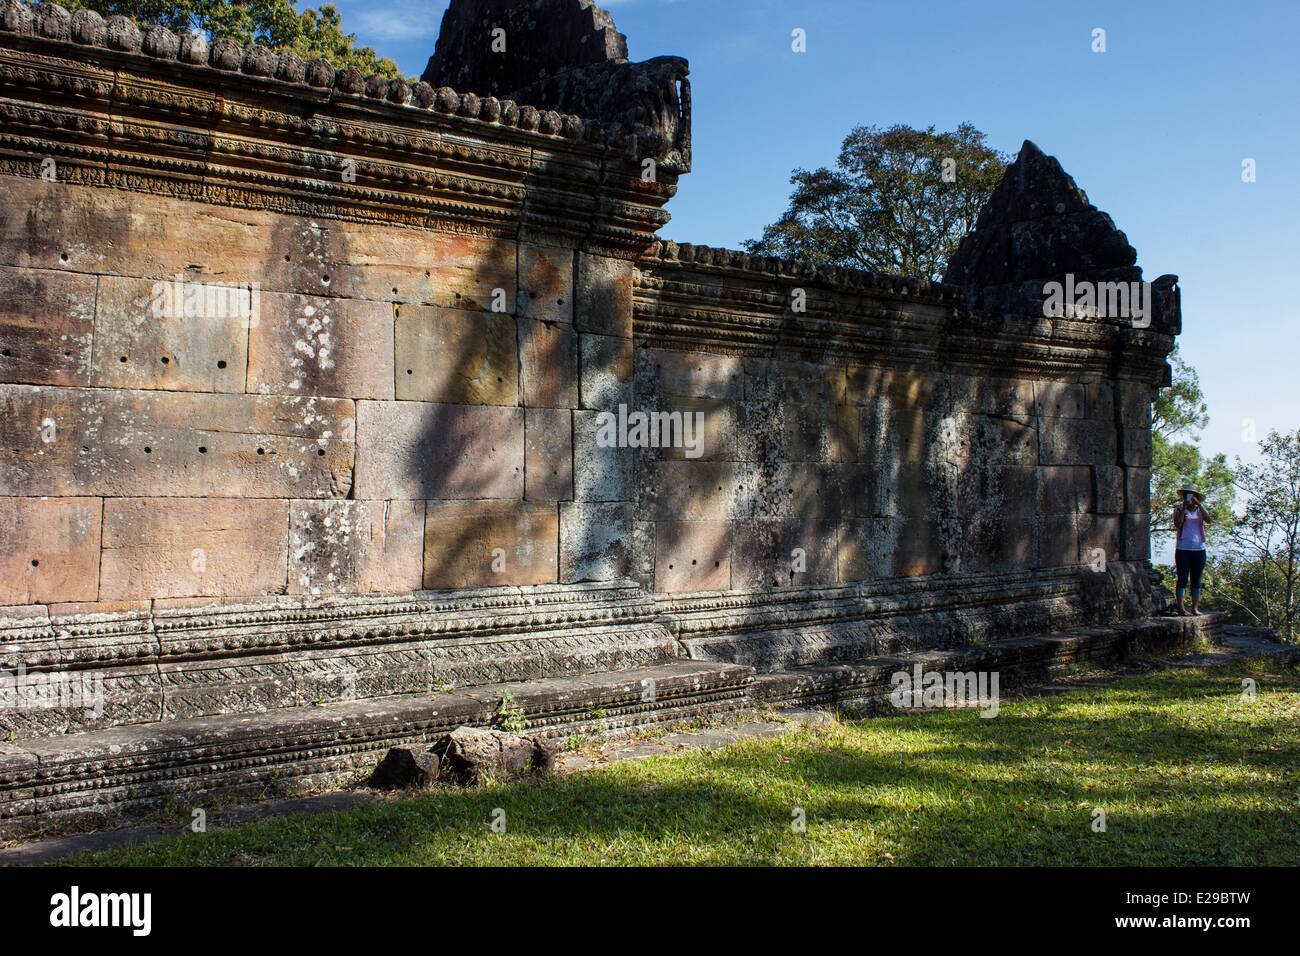 Temple de Preah Vihear est un ancien temple hindou qui est situé au sommet d'une falaise haute de 525 mètres dans le Des Monts Dangrek, au Cambodge. Banque D'Images